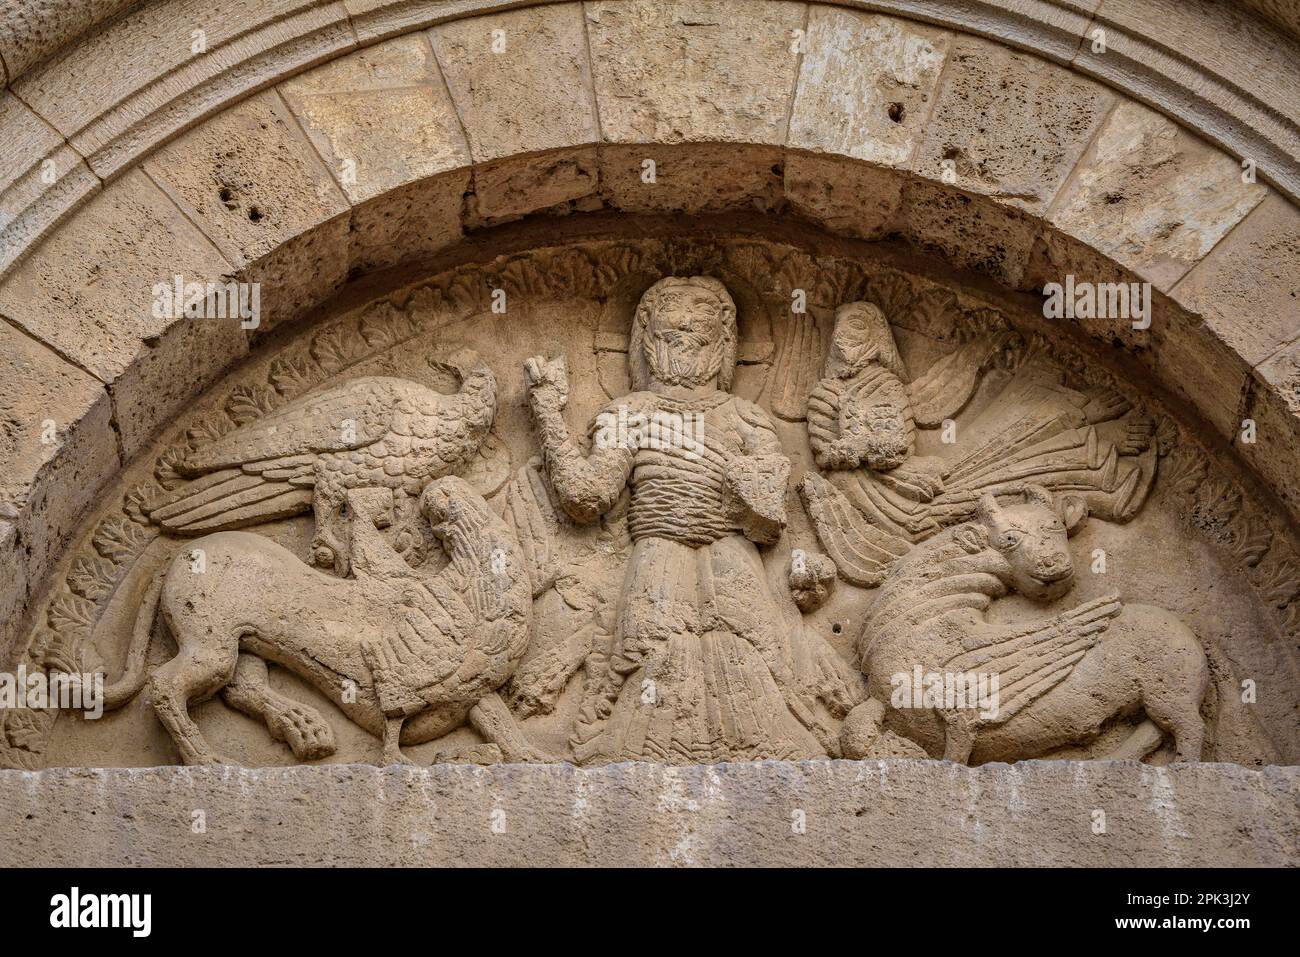 Particolare della porta del Conventet (convento) del Monastero di Pedralbes (Barcellona, Catalogna, Spagna) ESP: Detalle de la puerta del Conventet Foto Stock